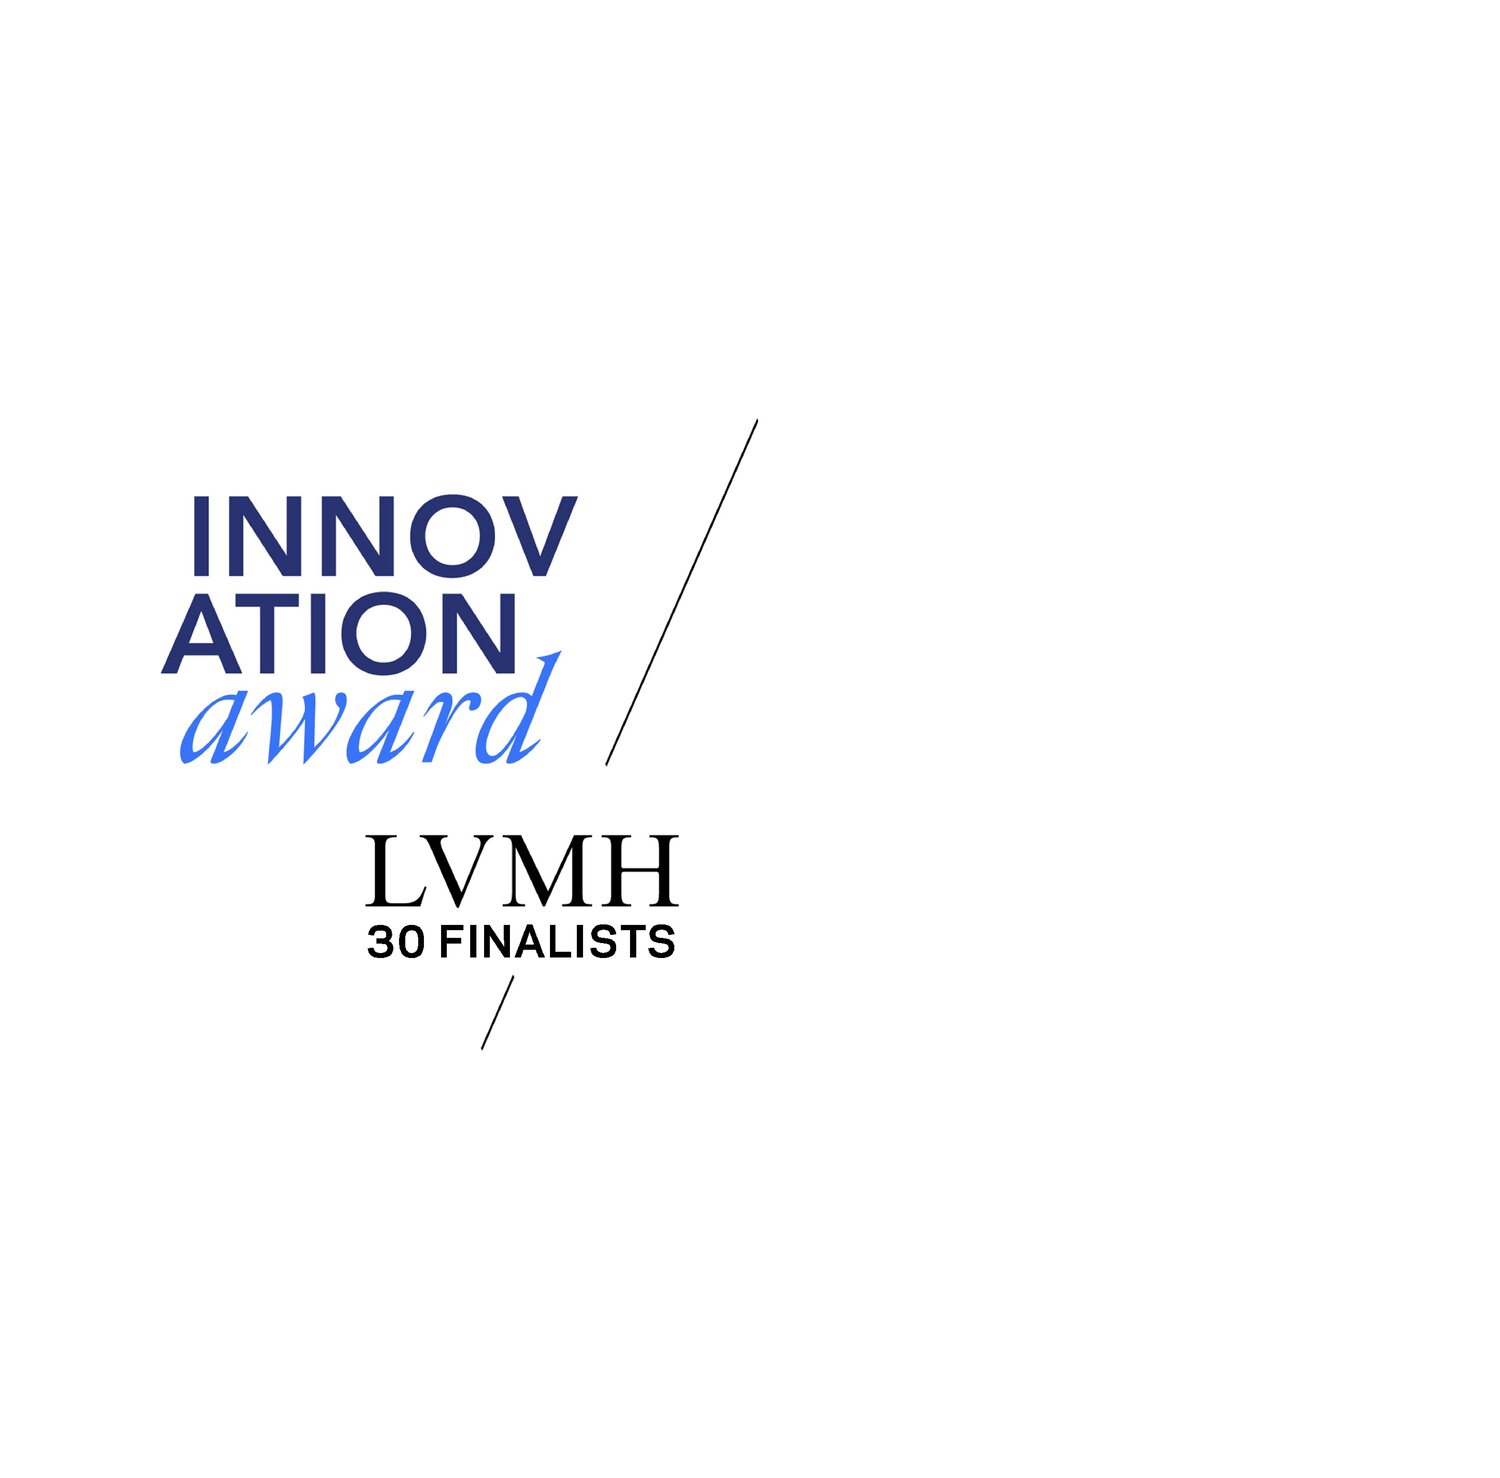 LVMH Innovation Award Finalist: METAV.RS